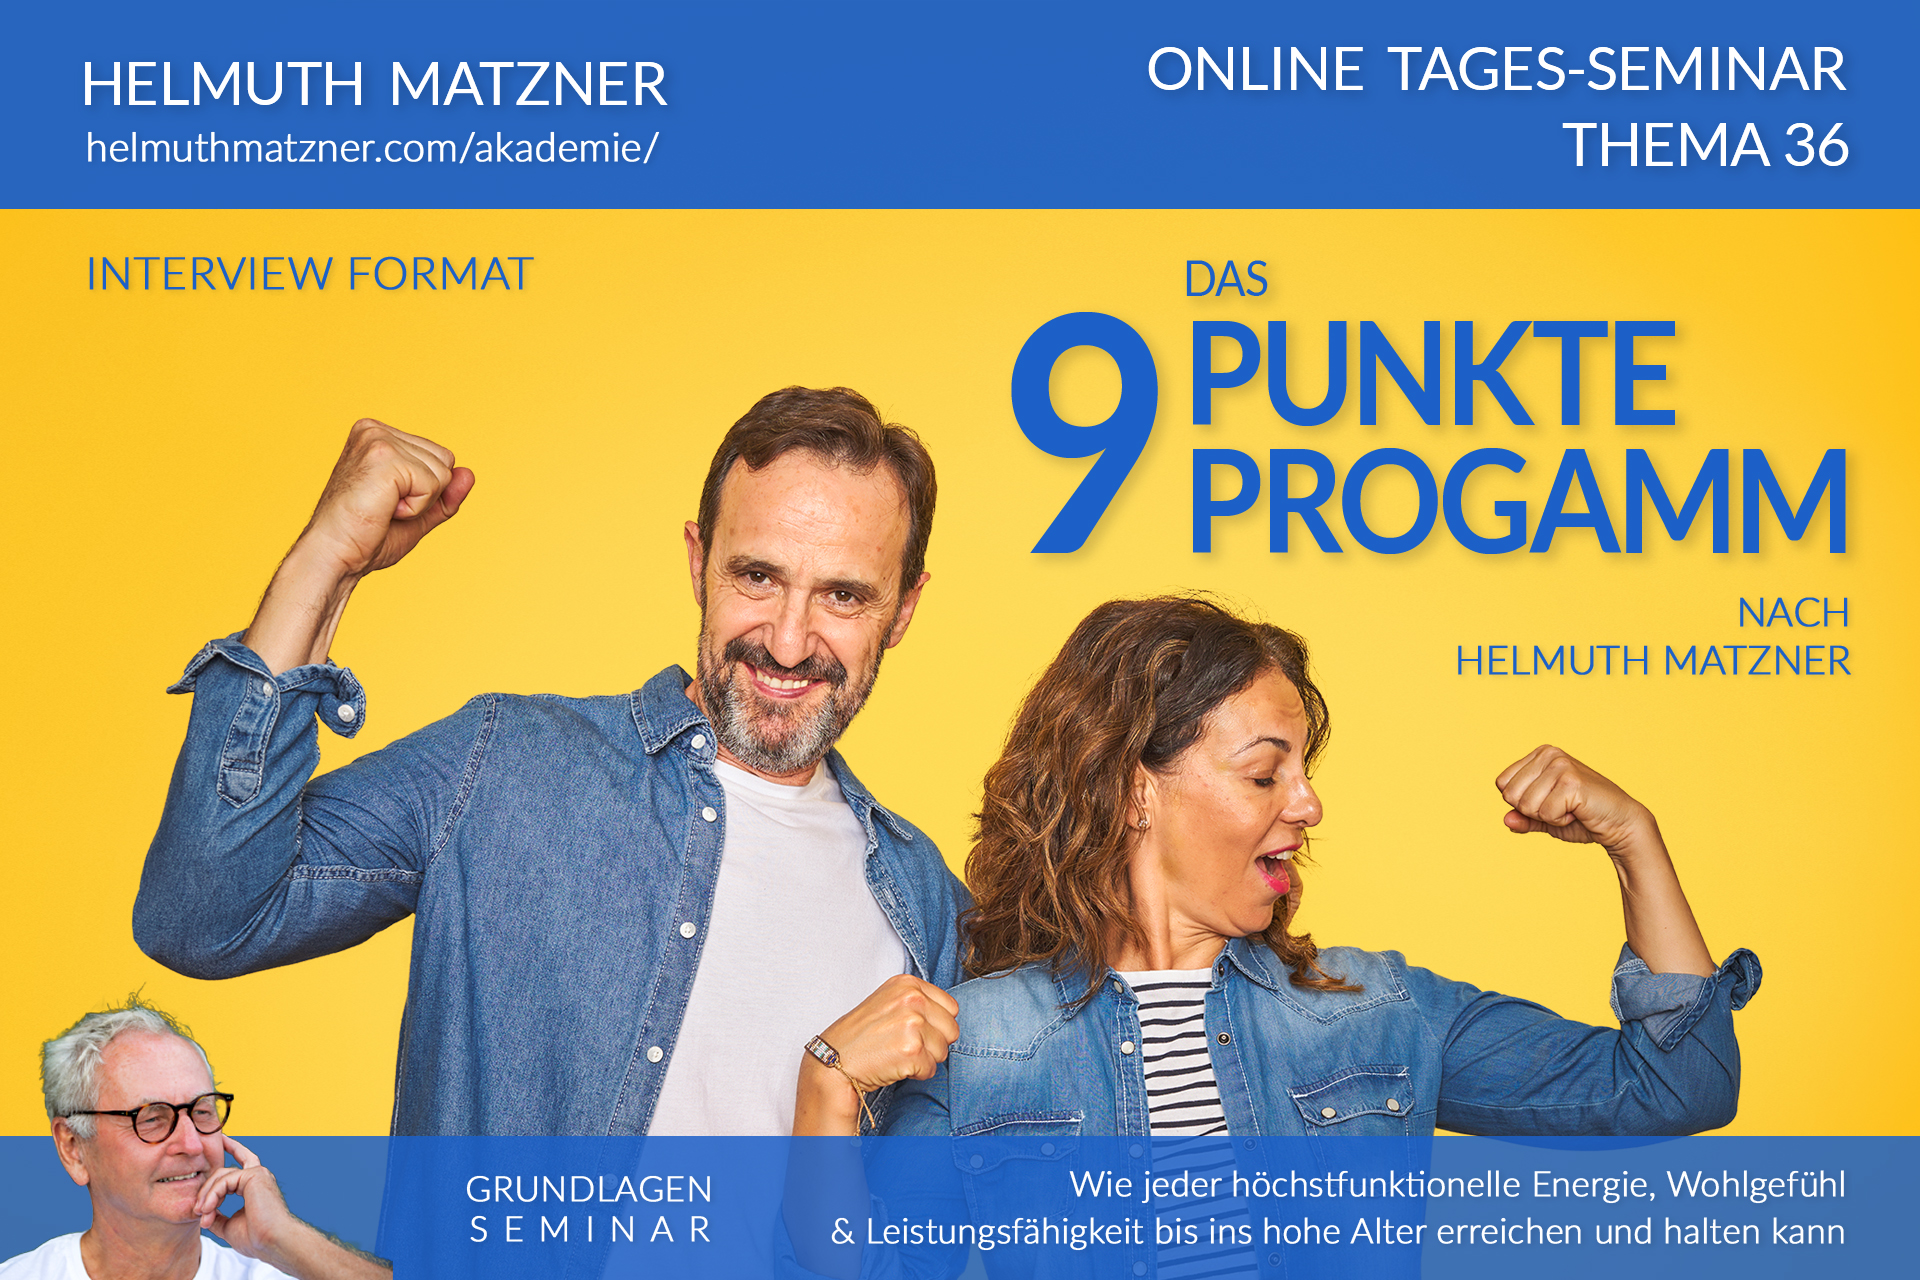 Helmuth Matzner - Masterclass & Akademie Wissenspaket 36 - 9-Punkte-Programm - AKADEMIE - v01 - Tagesseminar